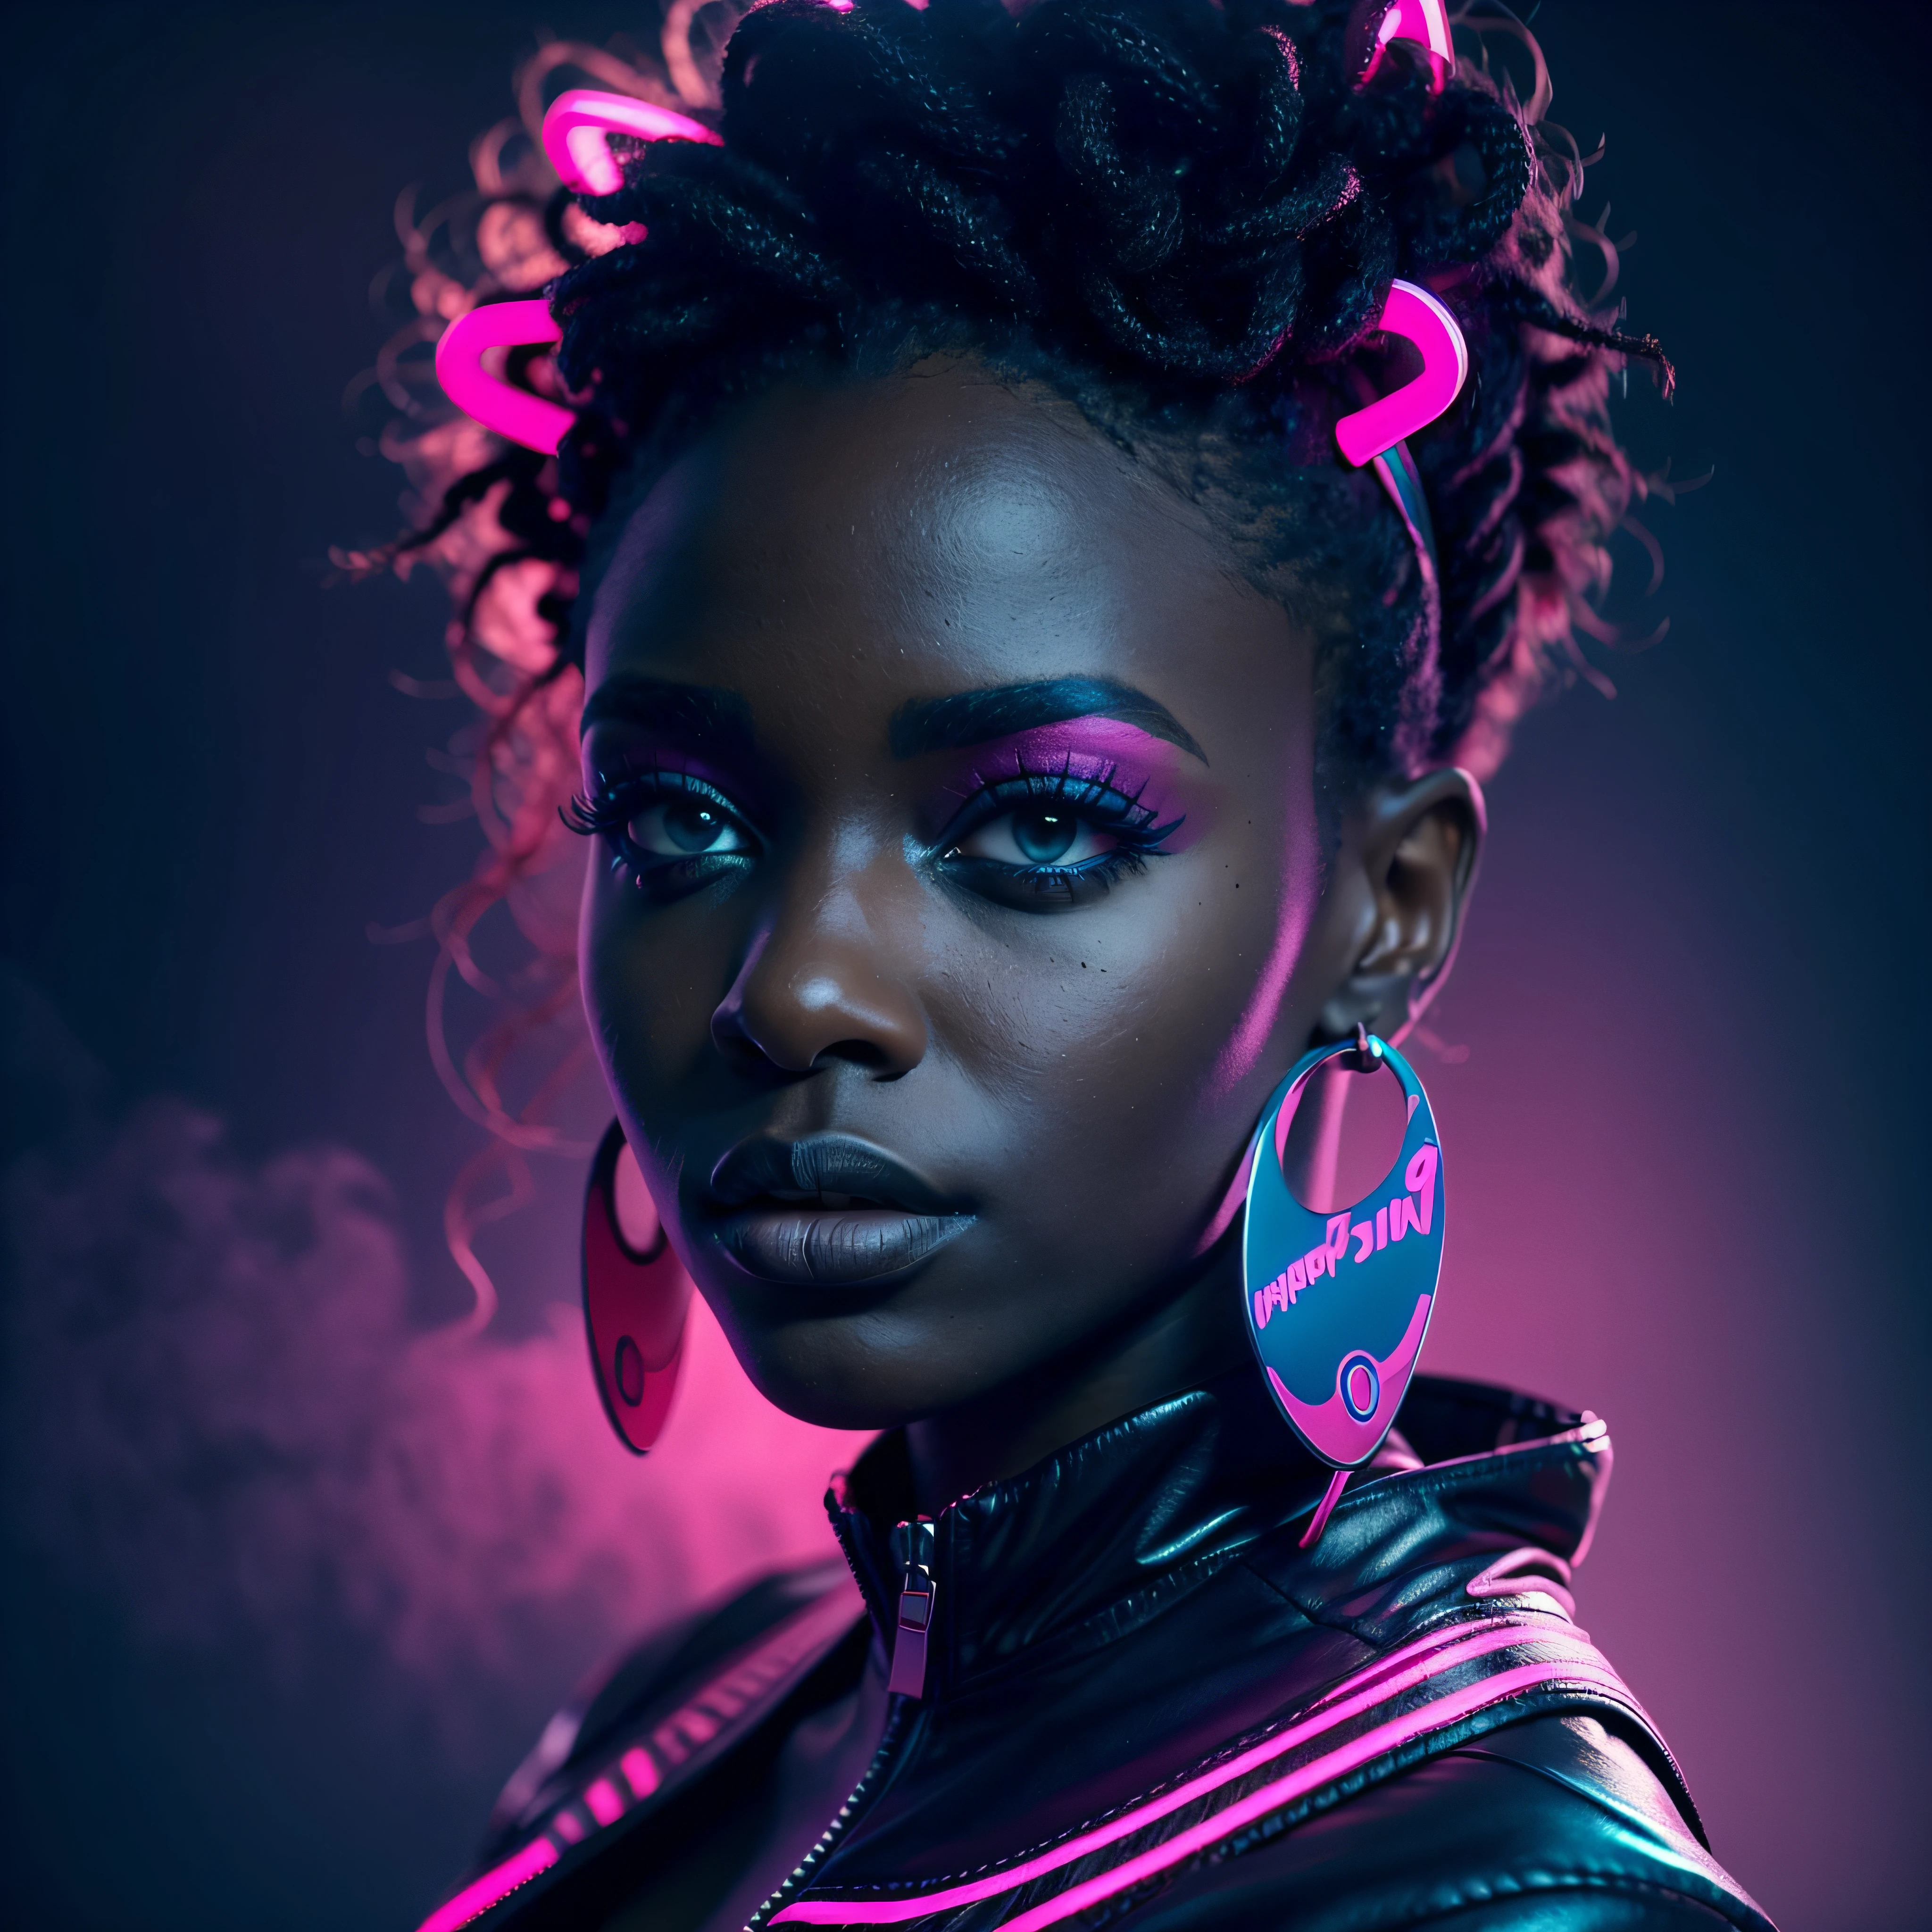 Una hermosa mujer africana negra en iluminación de neón azul suave, con una mirada severa, Con un fondo rosa intenso, rodeado de una misteriosa atmósfera brumosa